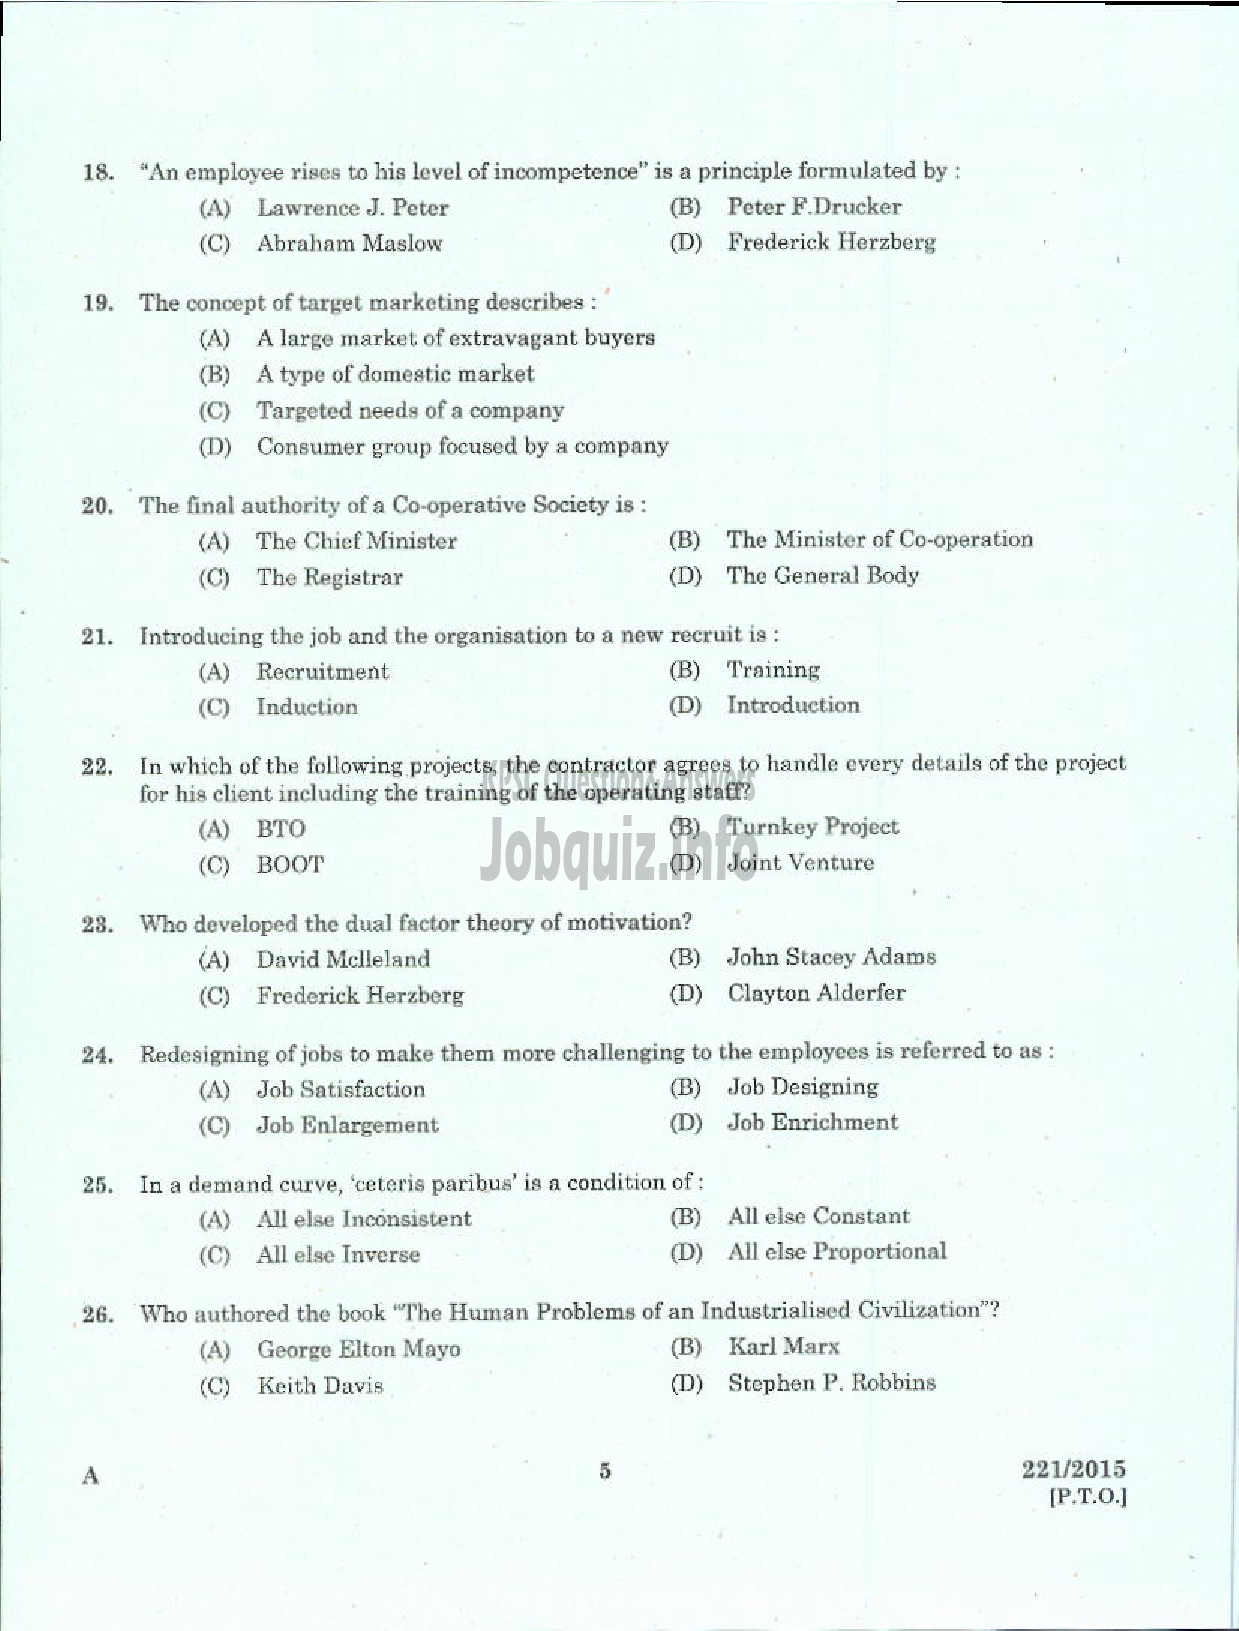 Kerala PSC Question Paper - NON VOCATIONAL TEACHER GENERAL FOUNDATION COURSE JUNIOR VHSE-3